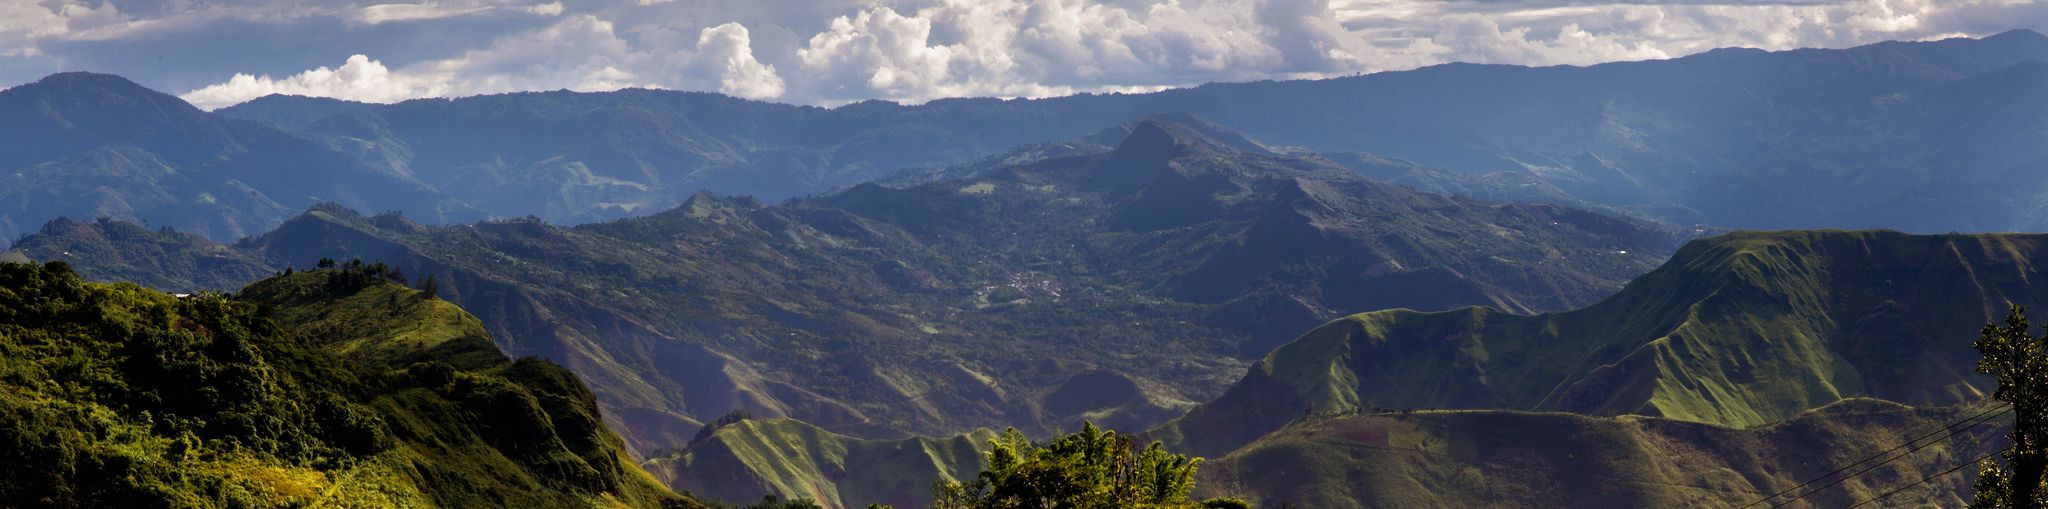 Panorama du paysage de la région de Cauca où est produit le Choco